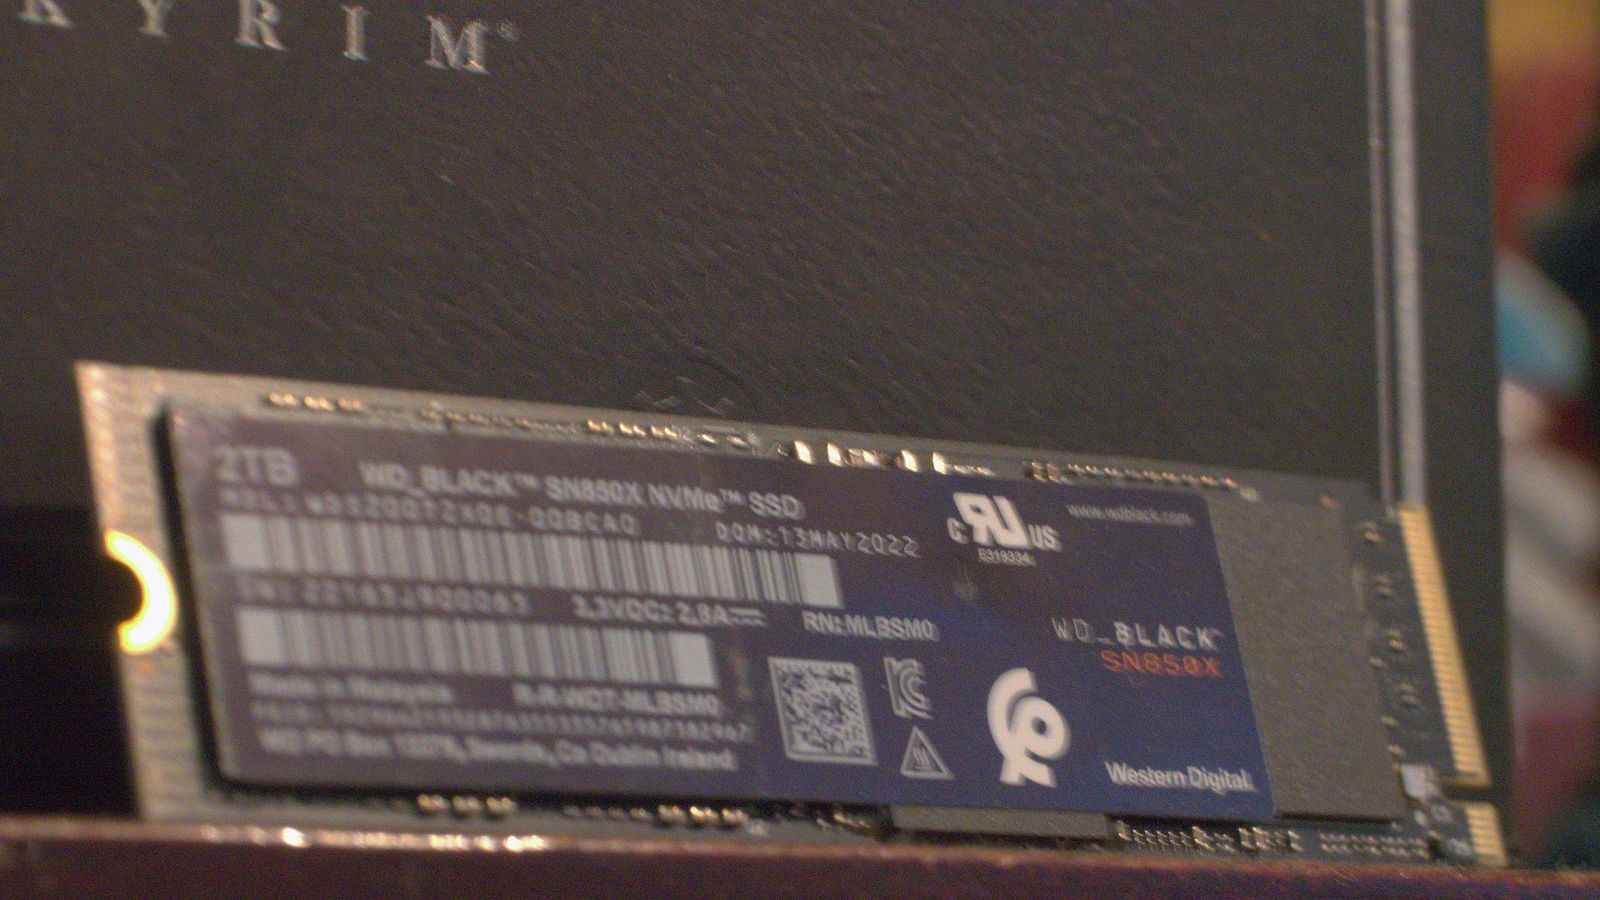 A WD Black SN850X SSD resting against a Skyrim box.